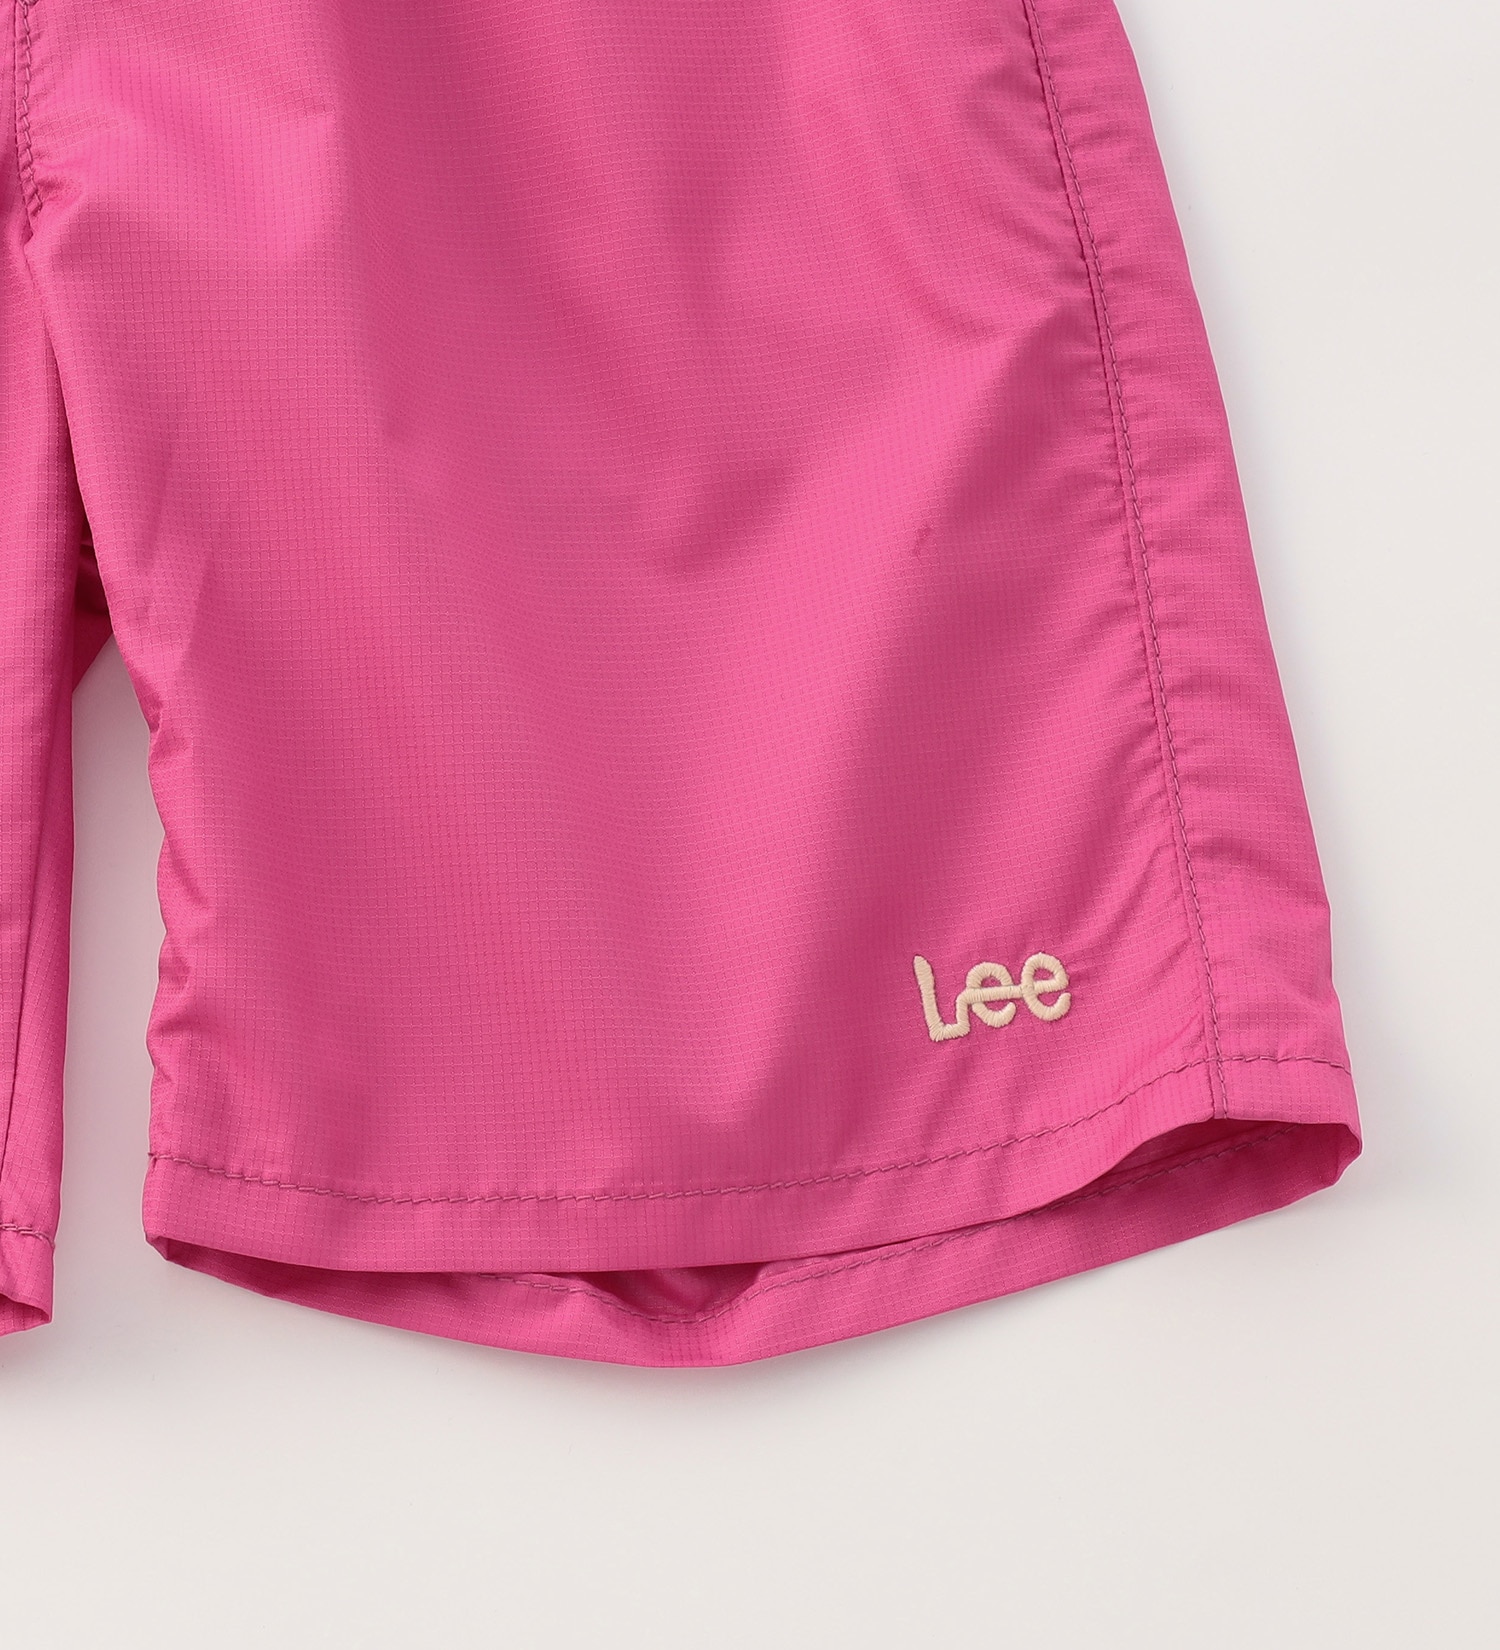 Lee(リー)の【100cm】ベビー アスレチックショーツ|パンツ/パンツ/キッズ|ピンク